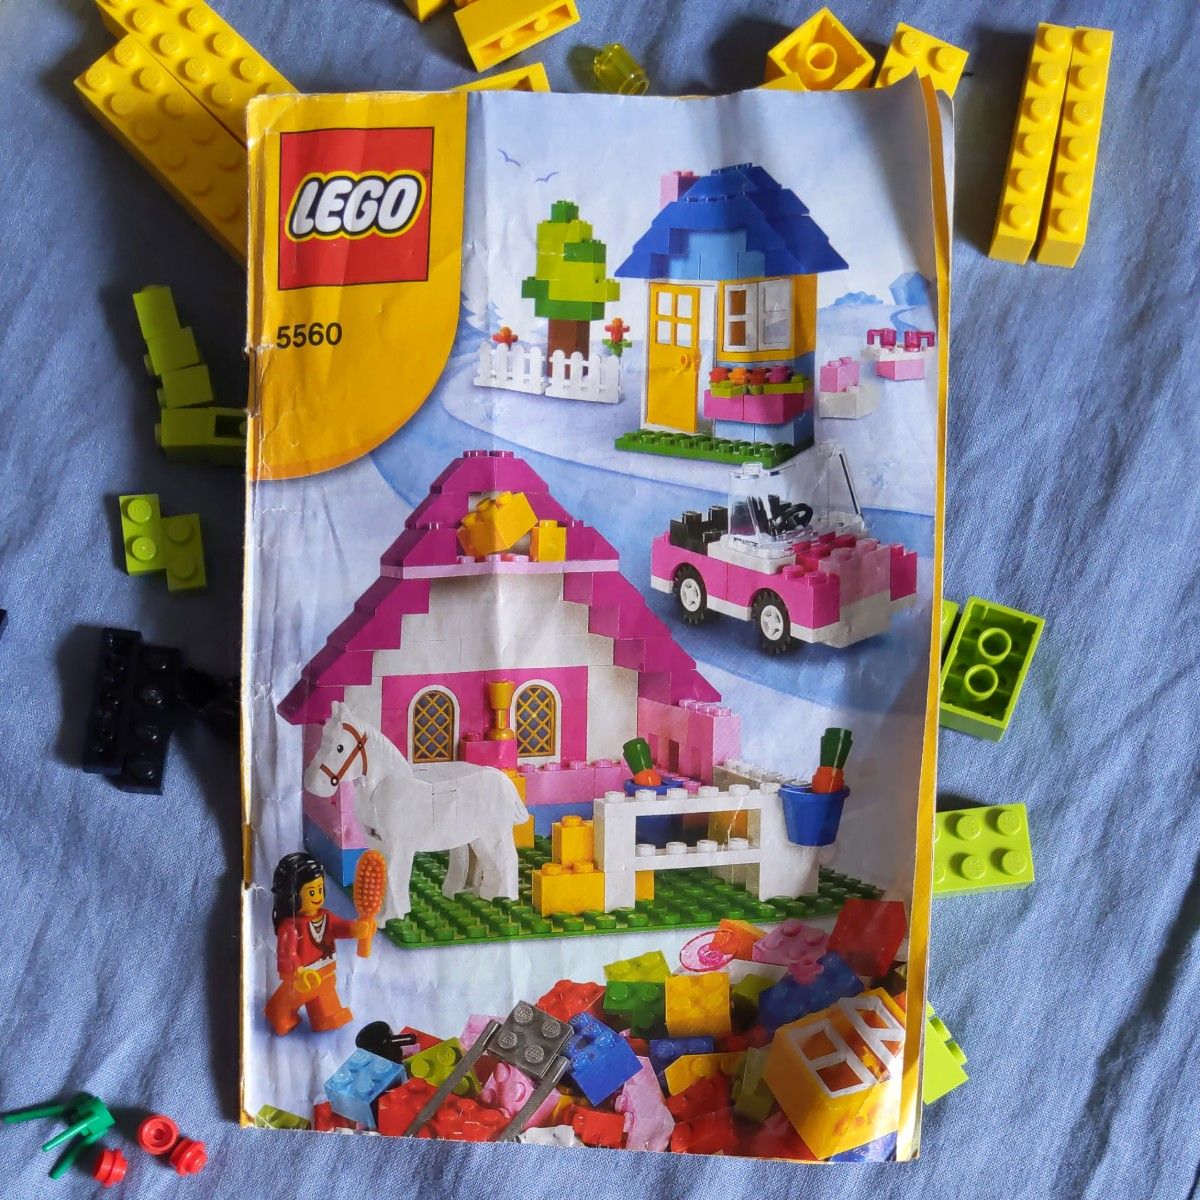 LEGO レゴ デュプロ ブロック基本セット5560 ☆ピンク・女の子・廃盤品・コンテナ